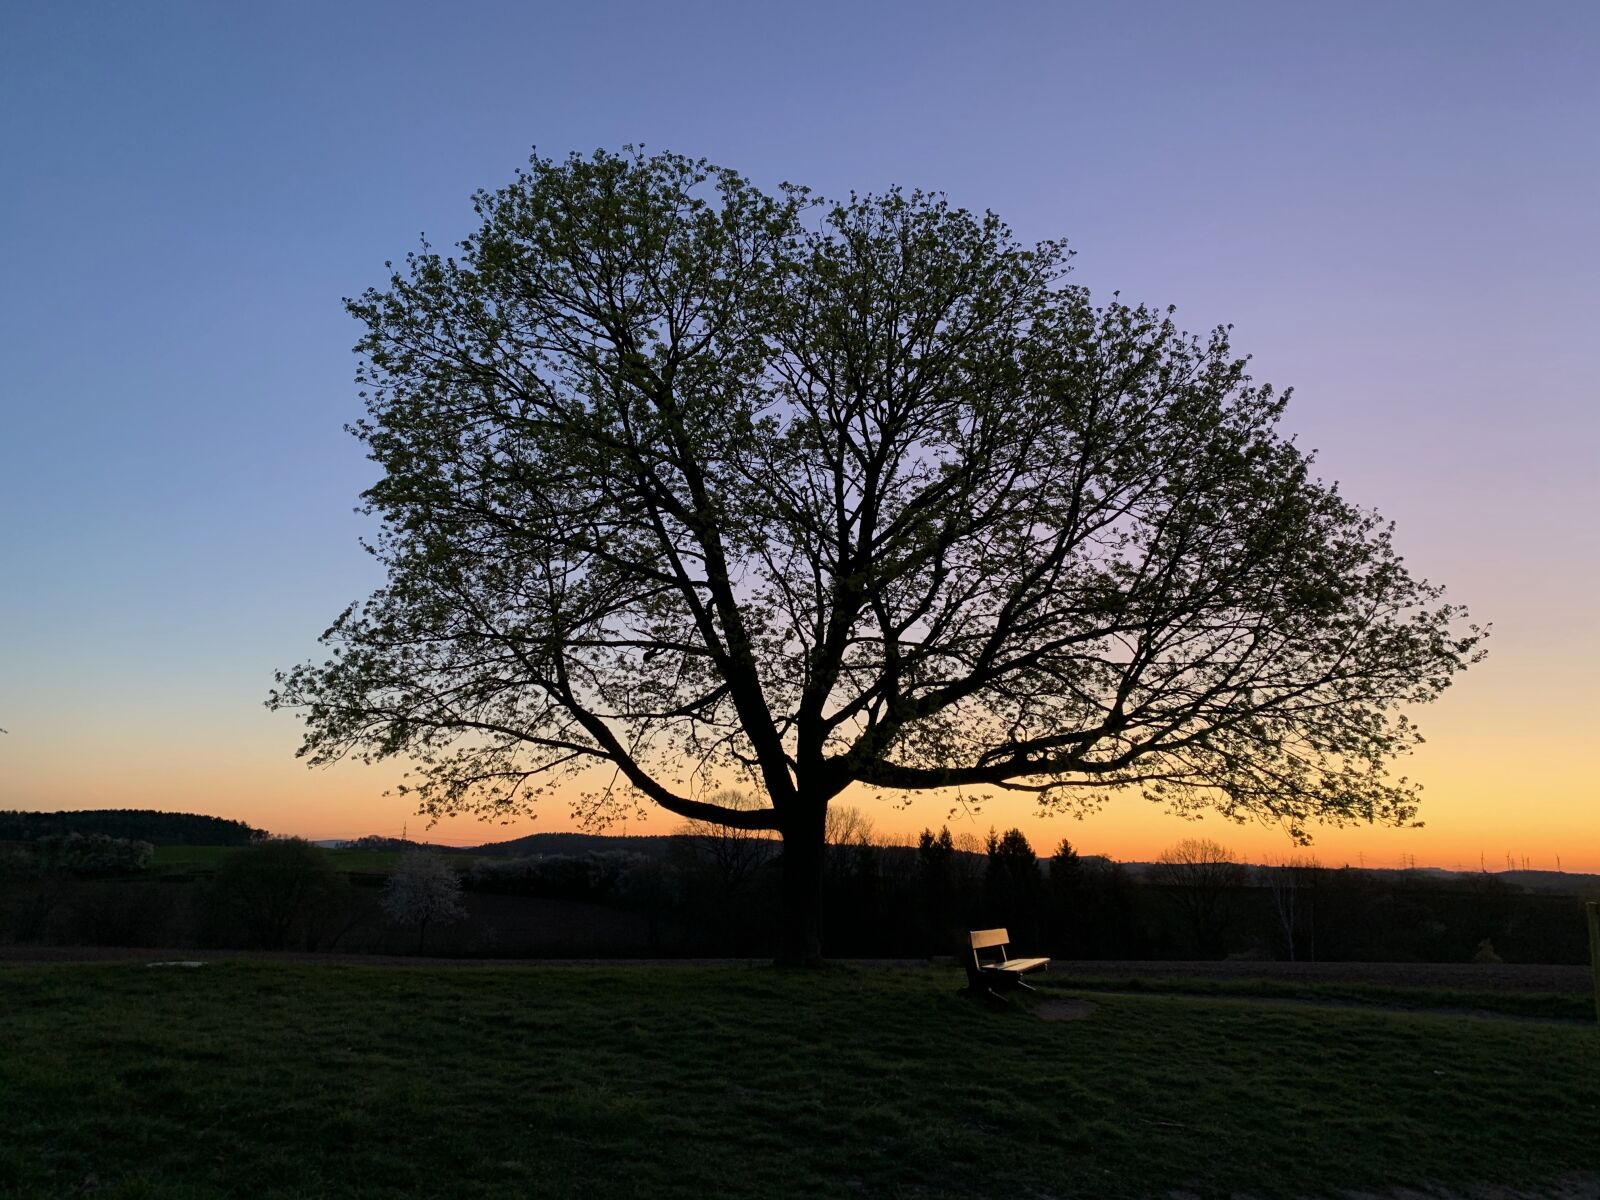 Apple iPhone XS sample photo. Tree, landscape, sunrise photography